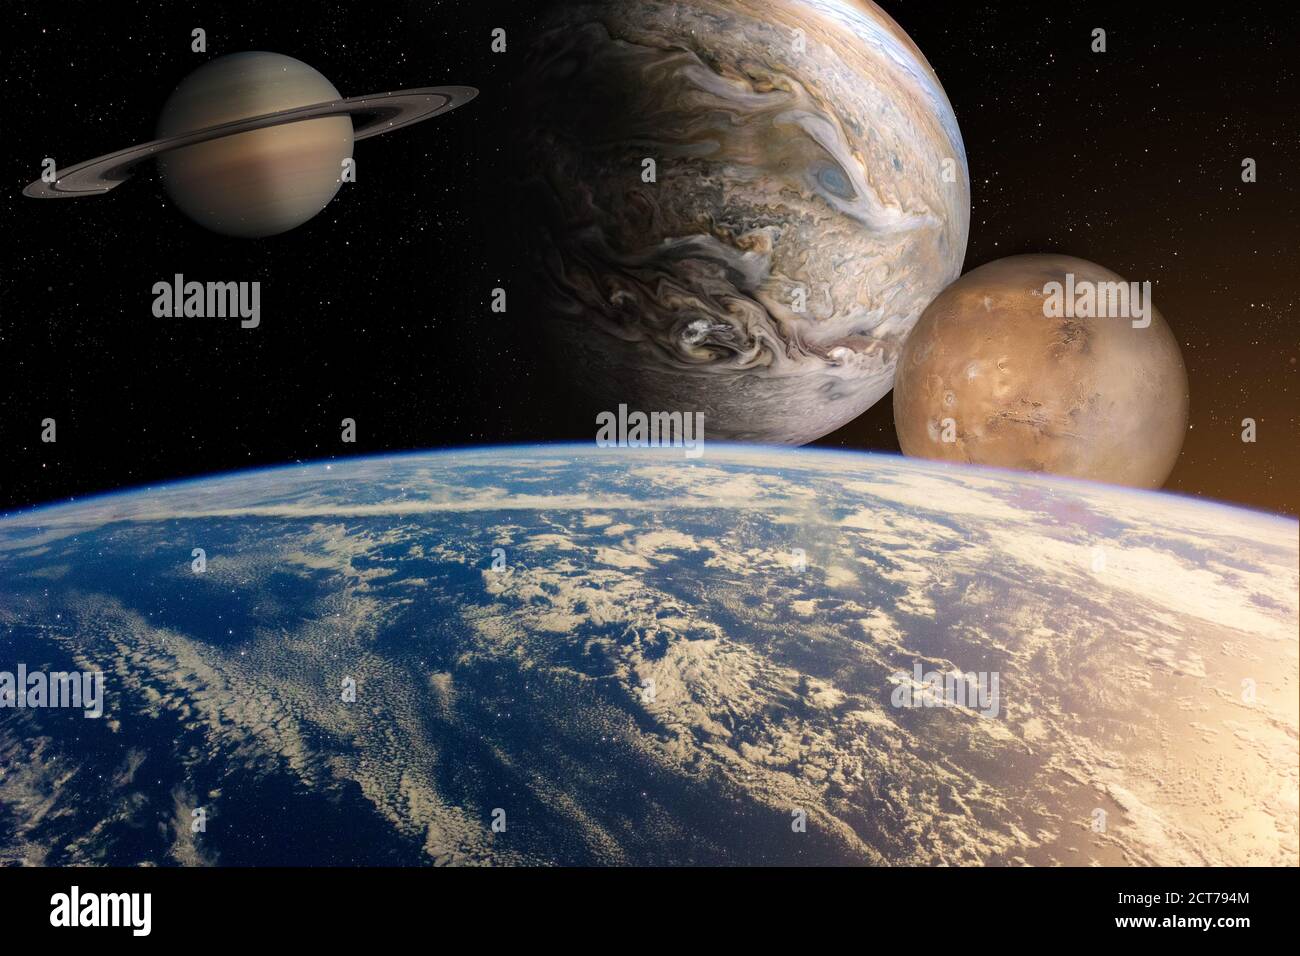 Planeten im Sonnensystem im Sternenuniversum mit Kopie Raumelemente dieses Bildes, die von der NASA eingerichtet wurden Stockfoto